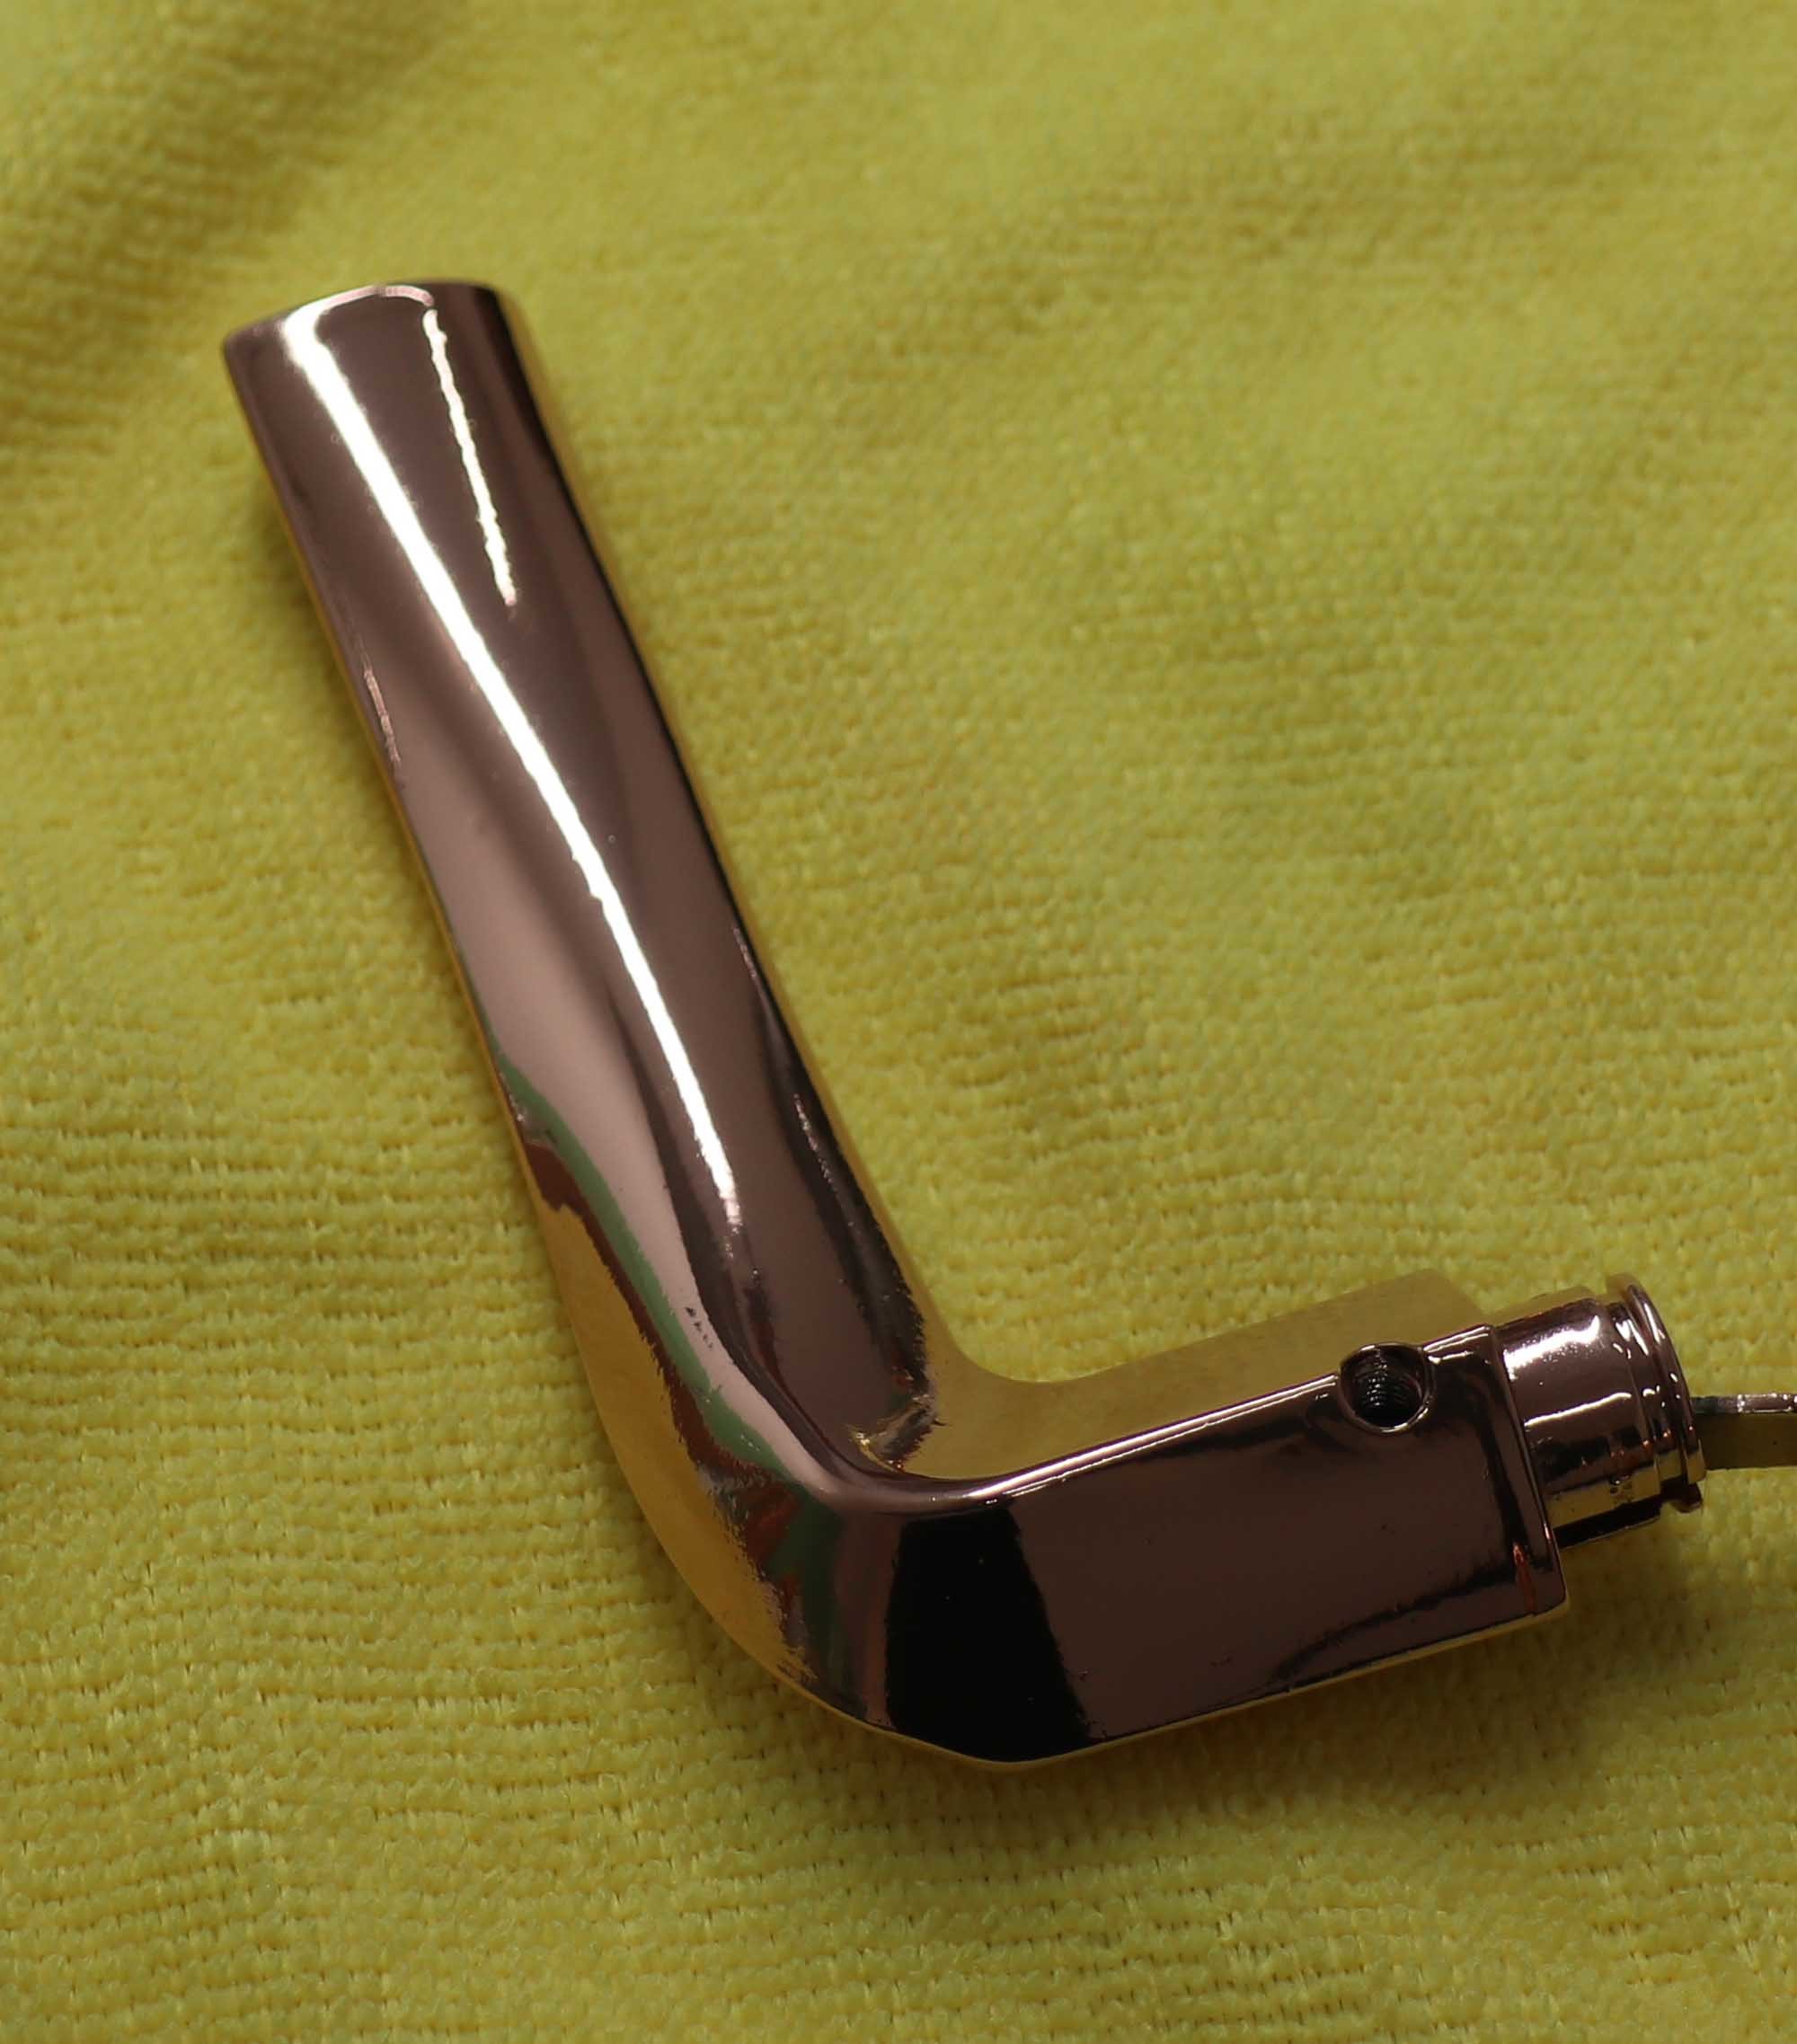 Stainless Steel Door handle, stair hand rails Gold coatings